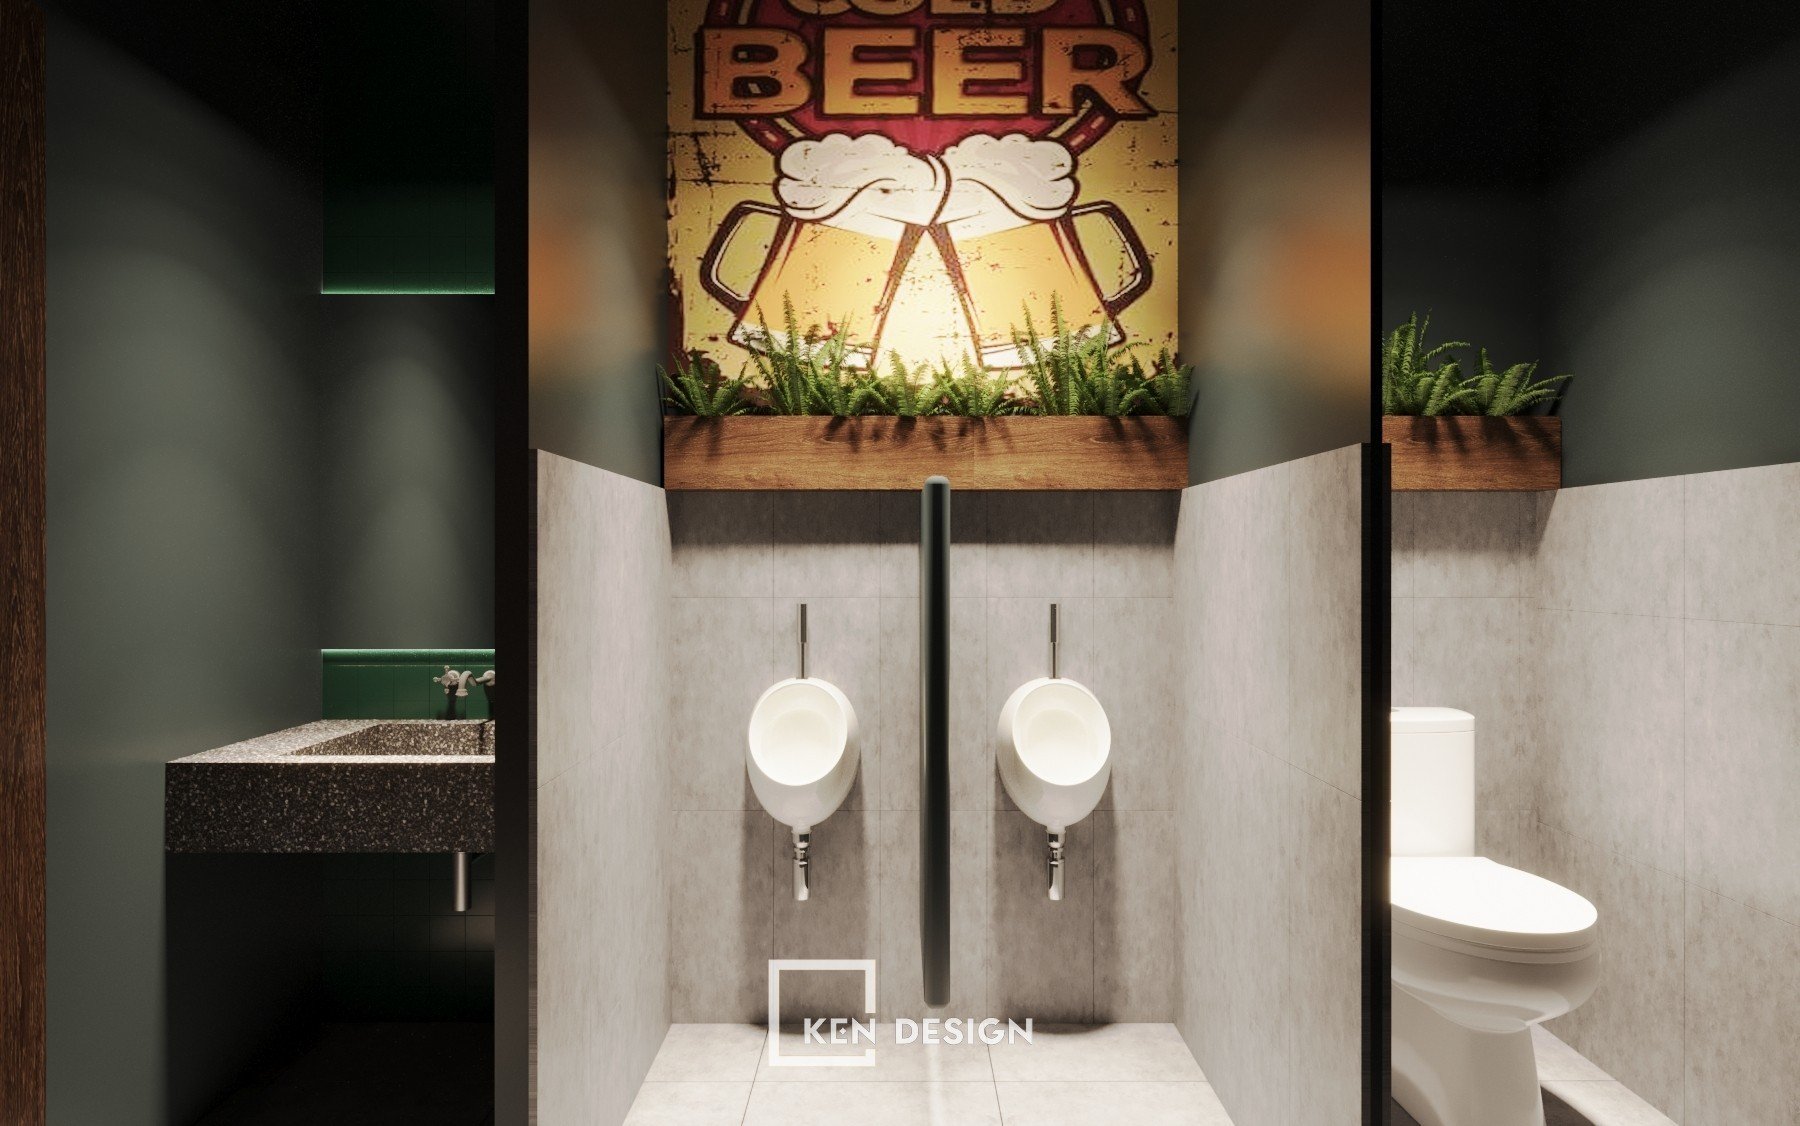 thiet ke nha hang bia 29 - Thiết kế nhà hàng bia độc lạ, phóng khoáng tại Hà Nội